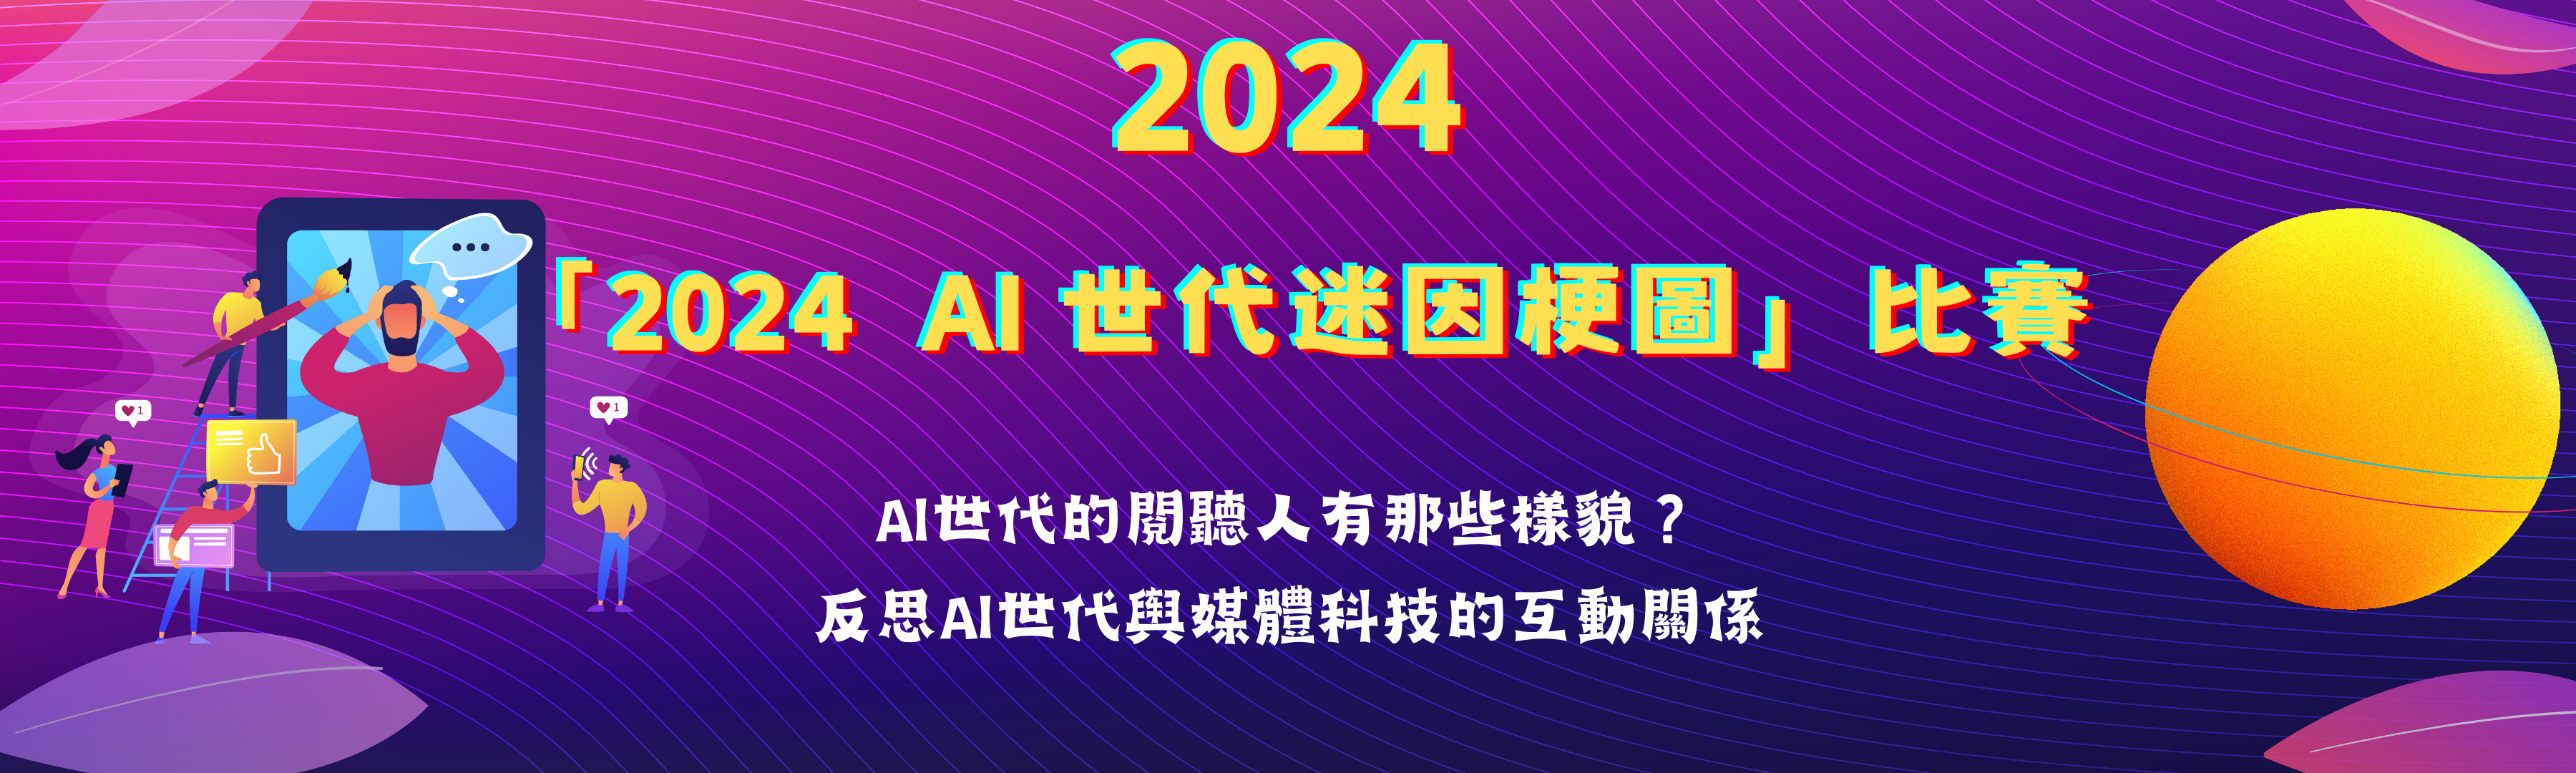 「2024 AI世代迷因梗圖」比賽暨頒獎